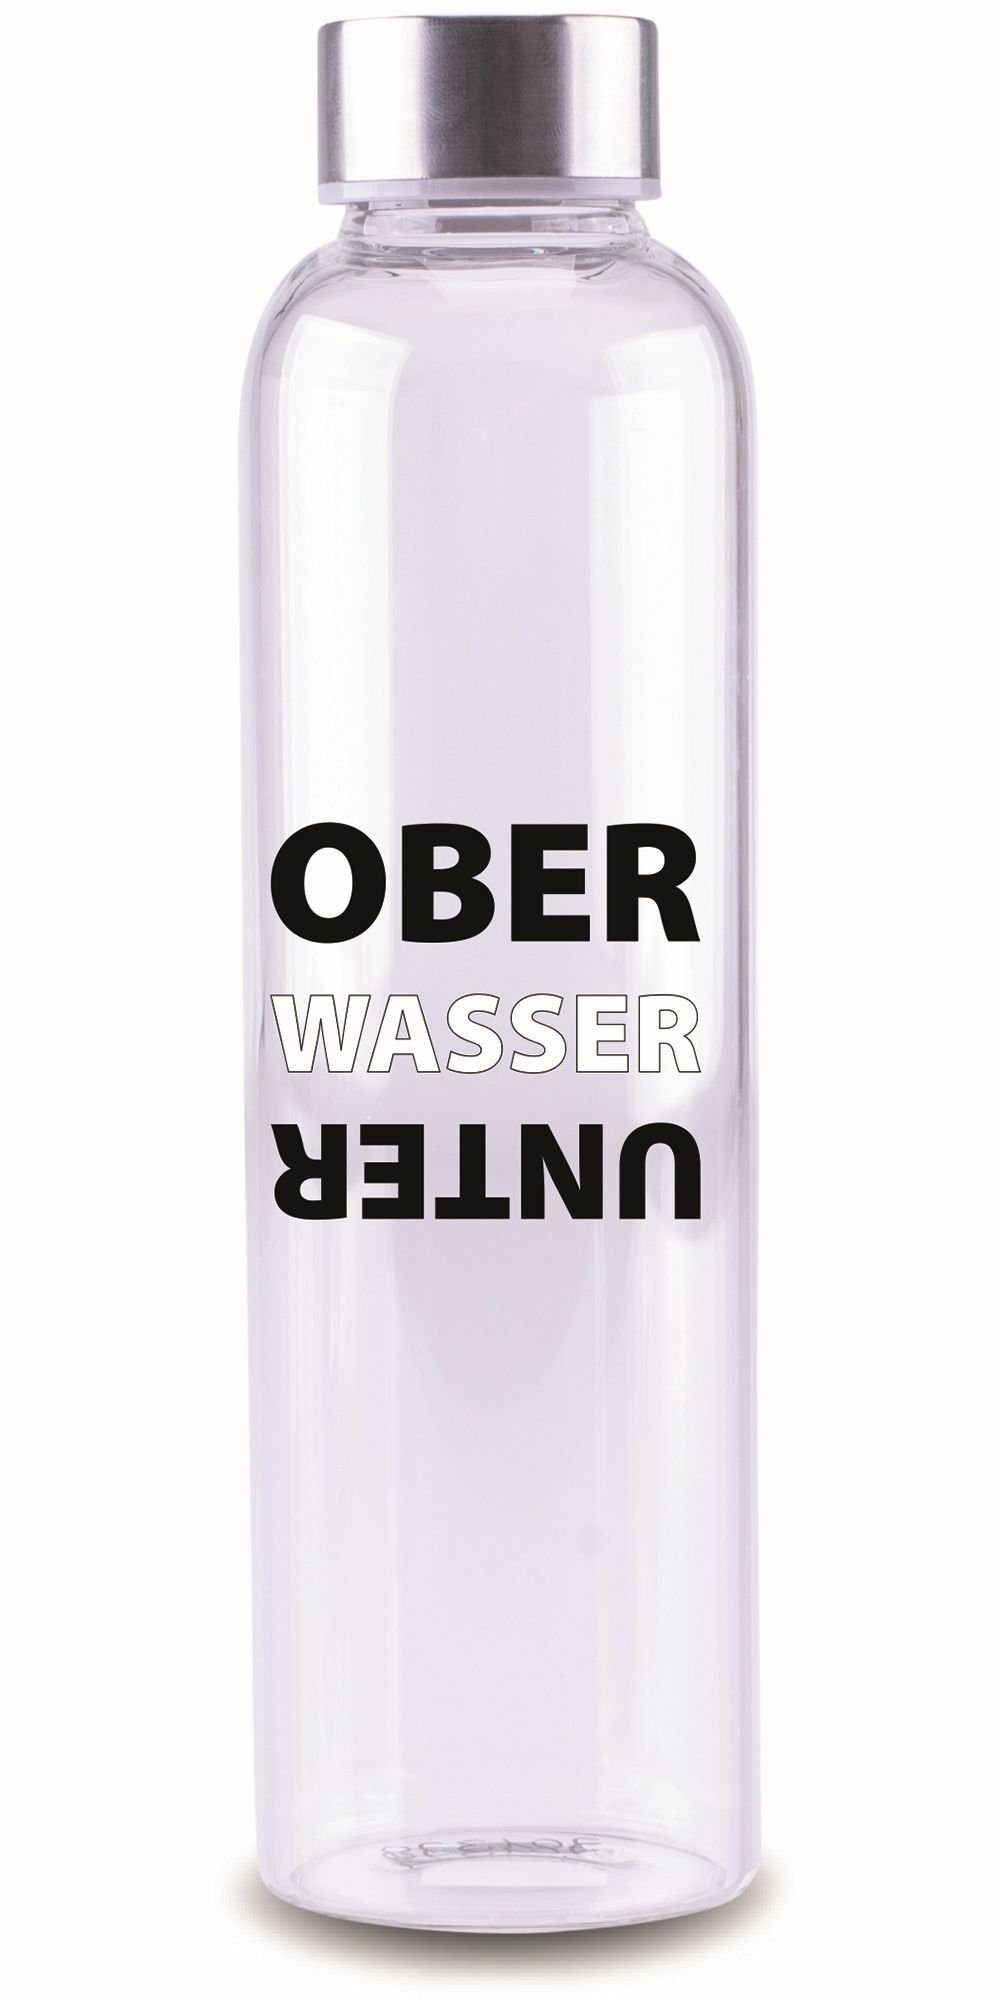 Steuber Trinkflasche, mit Schriftzug OBER WASSER UNTER temperatur-resistent  spülmaschinengeeignet OBER WASSER UNTER farblos